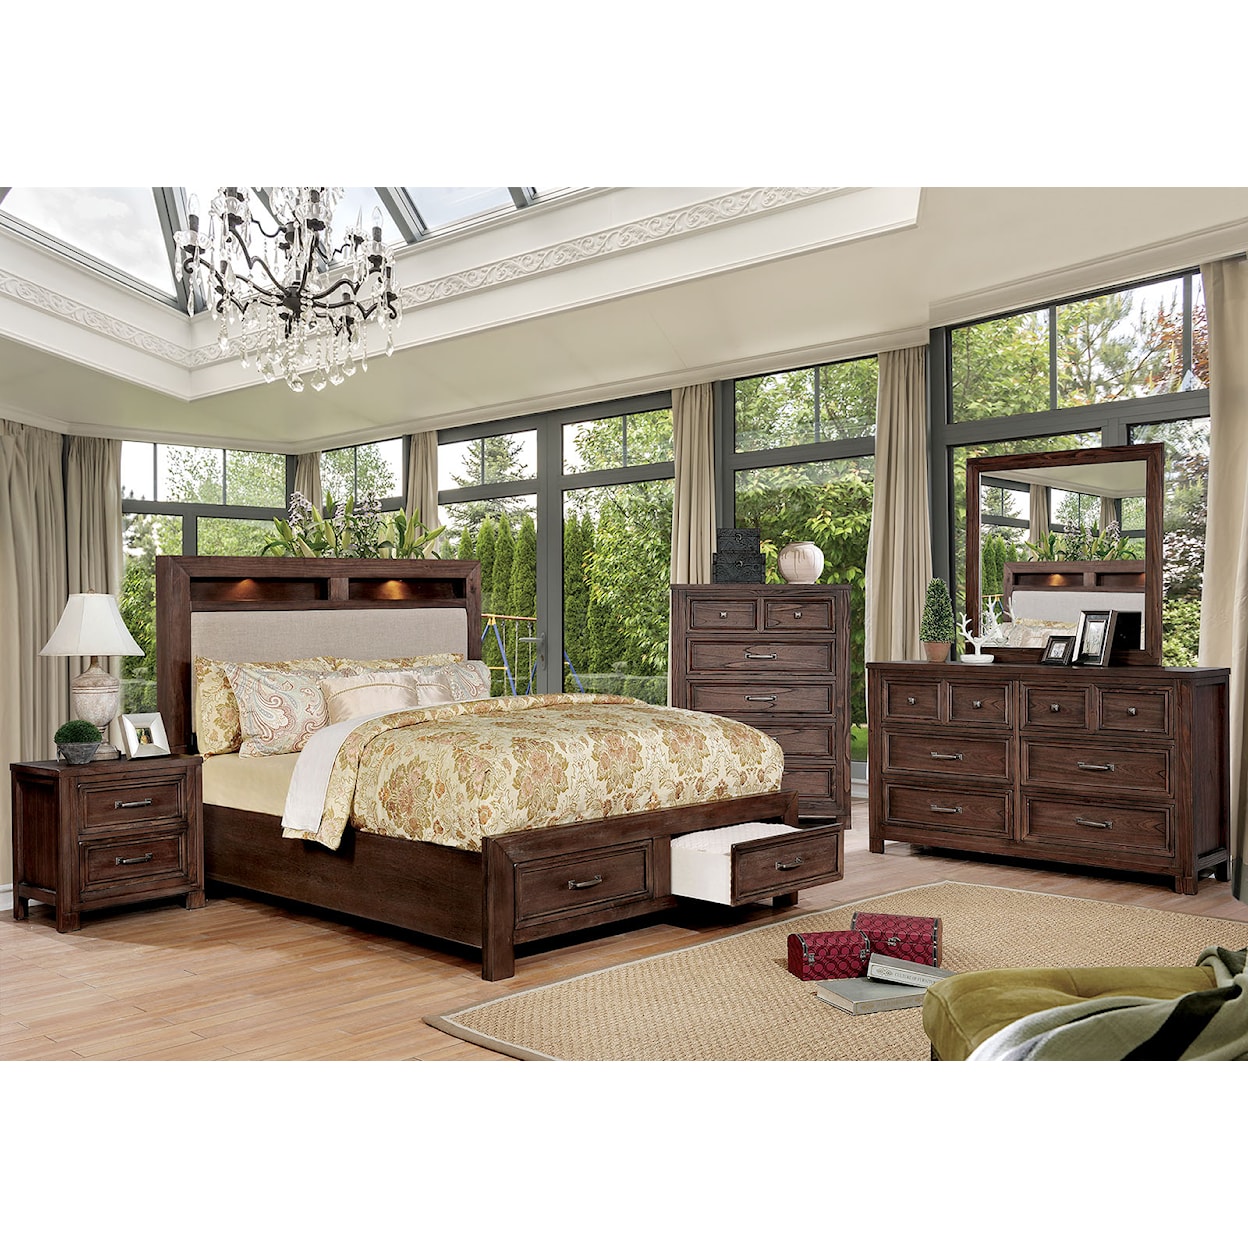 Furniture of America Tywyn Queen Bedroom Set